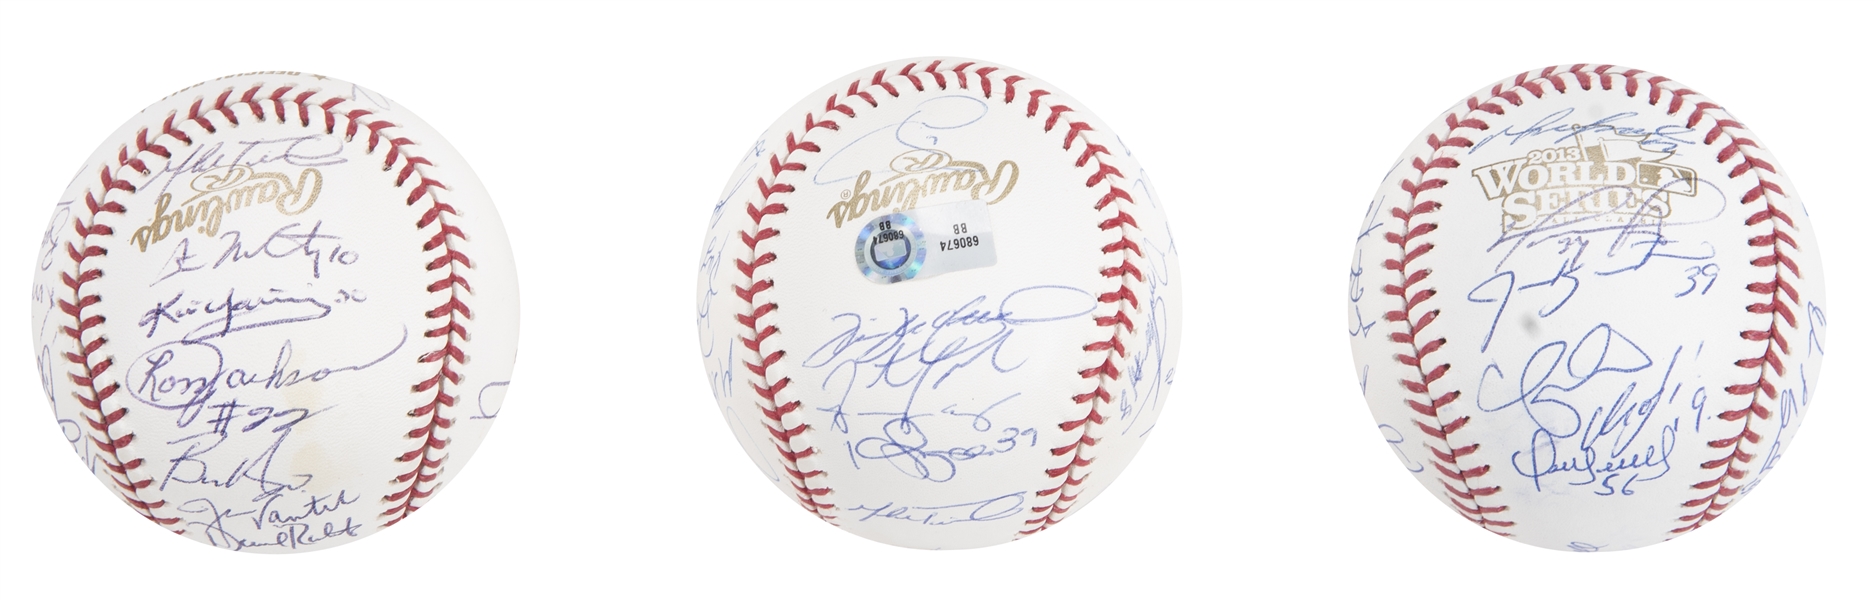 Jon Lester Signed OML Baseball (Beckett)